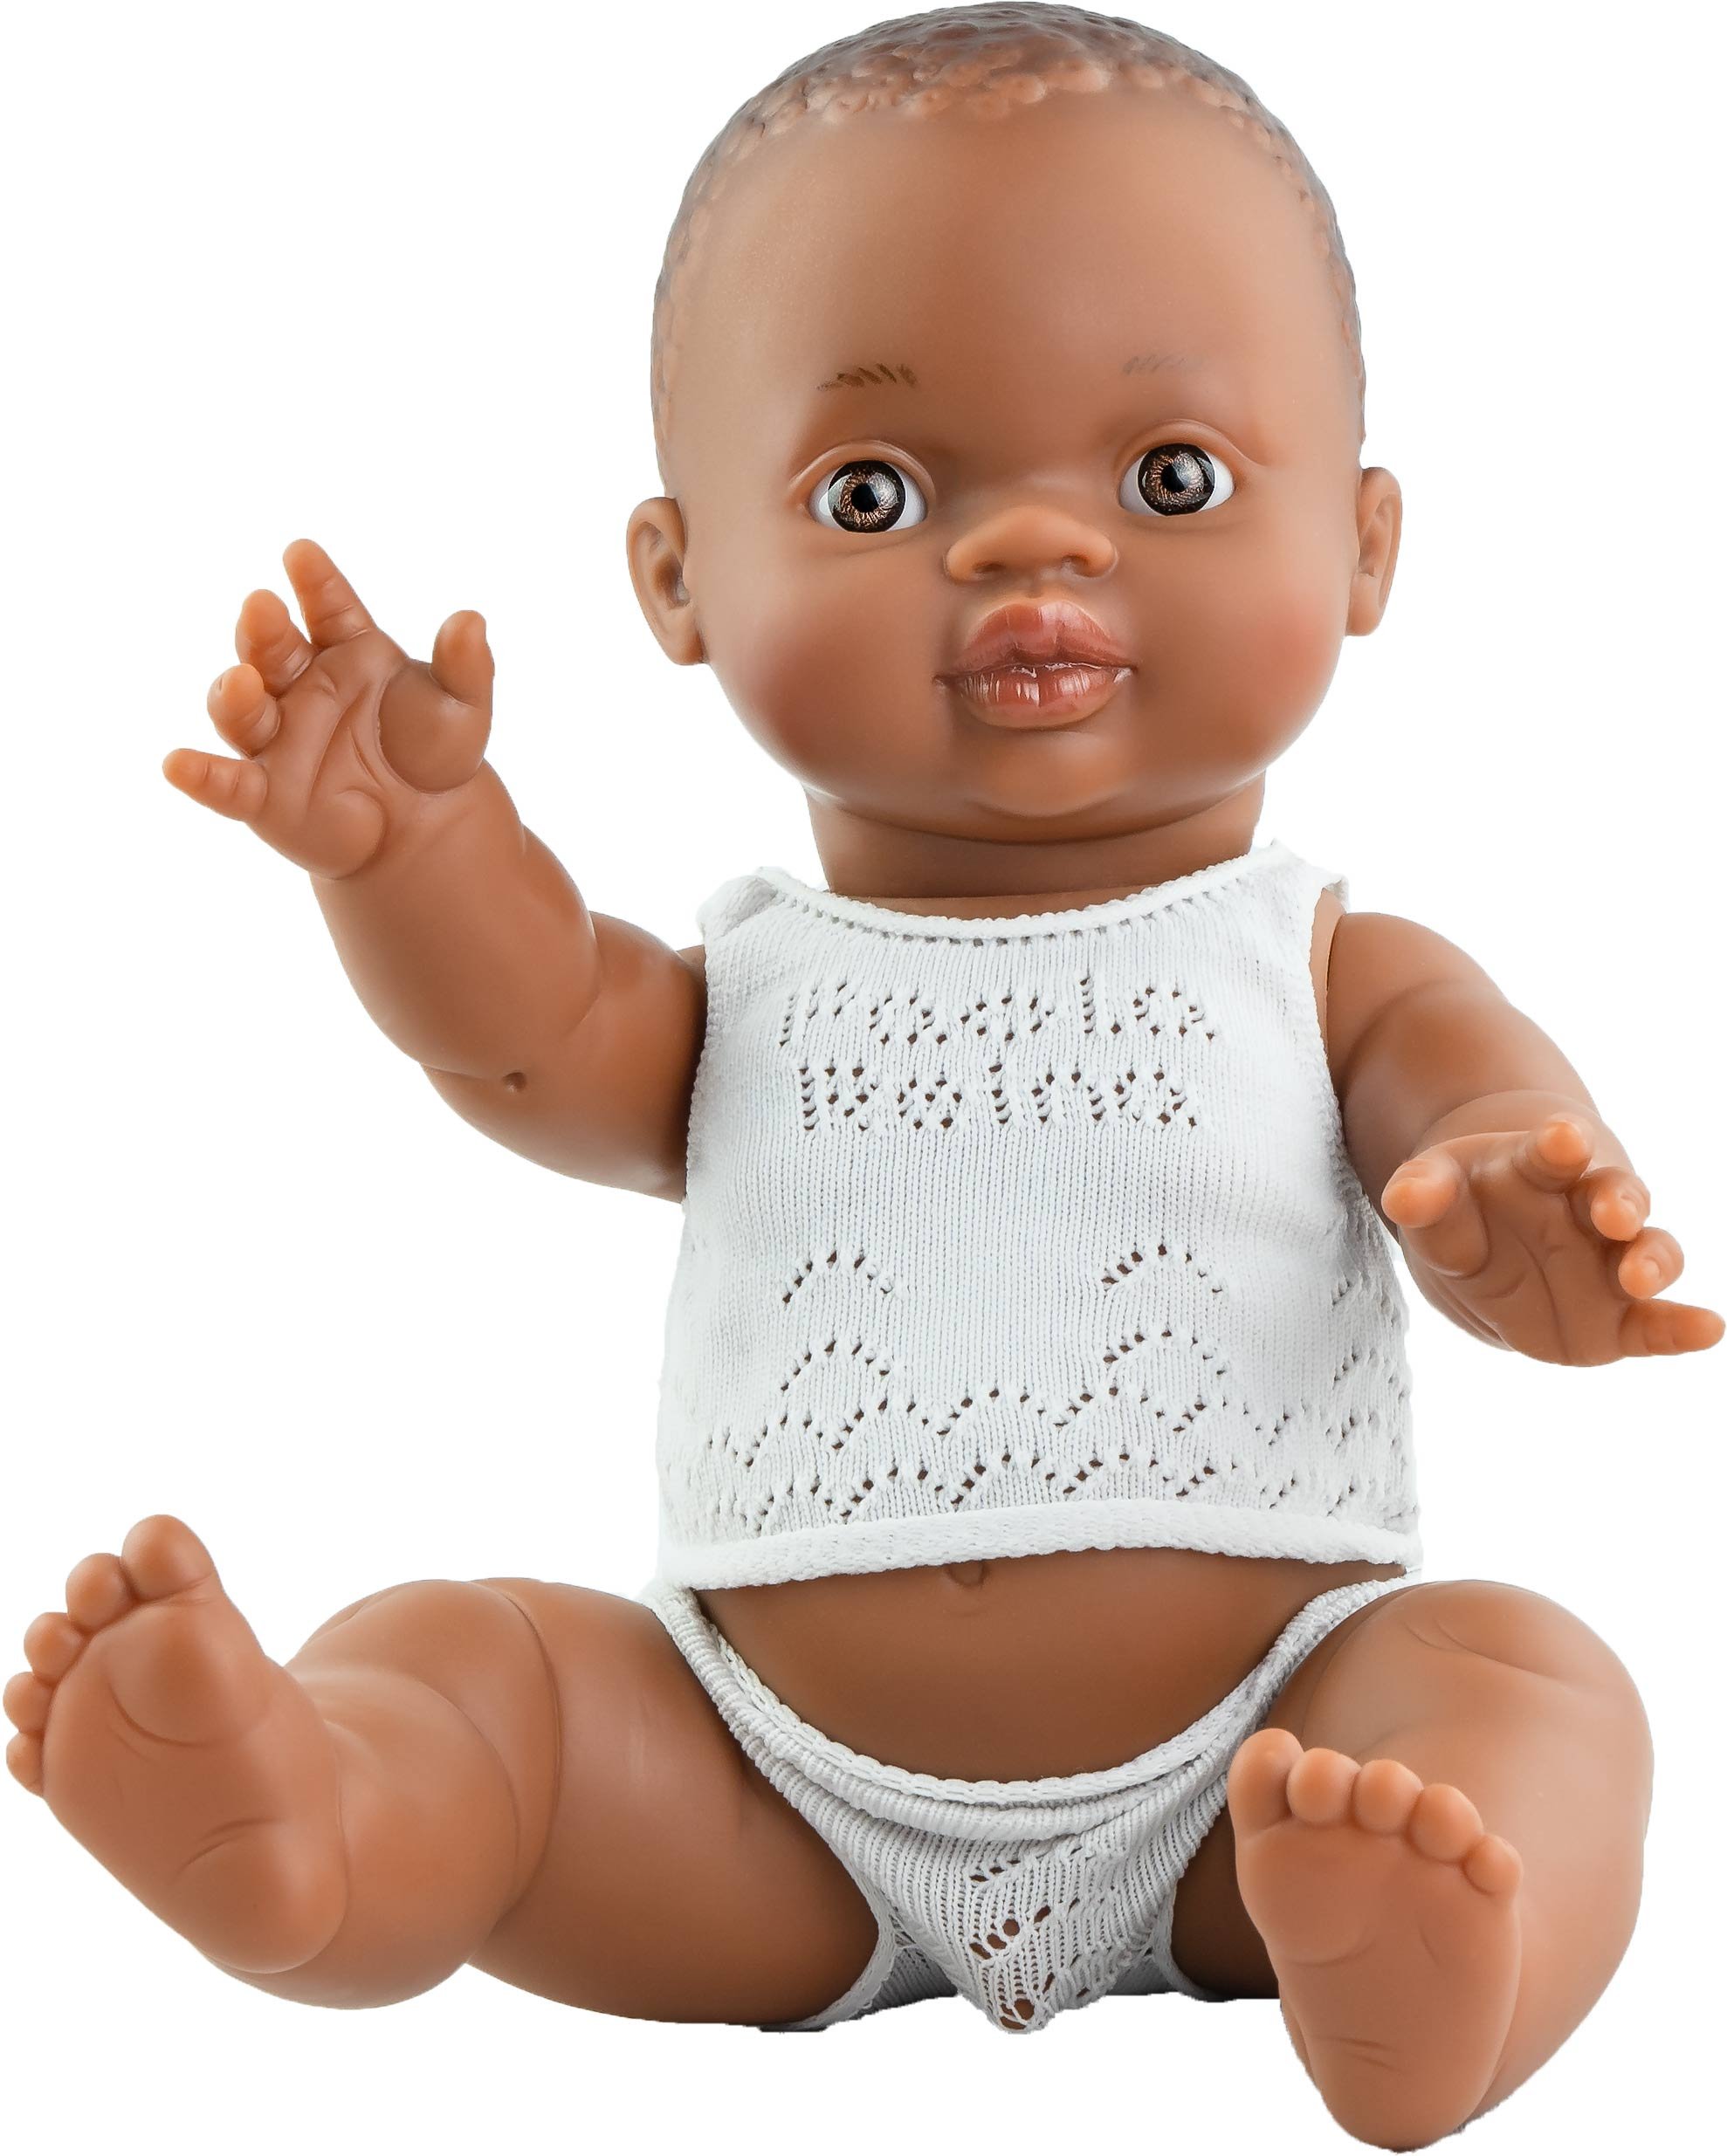 Paola Reina Кукла Горди в нижнем белье, 34 см, мулат, в пакете, арт. 34002